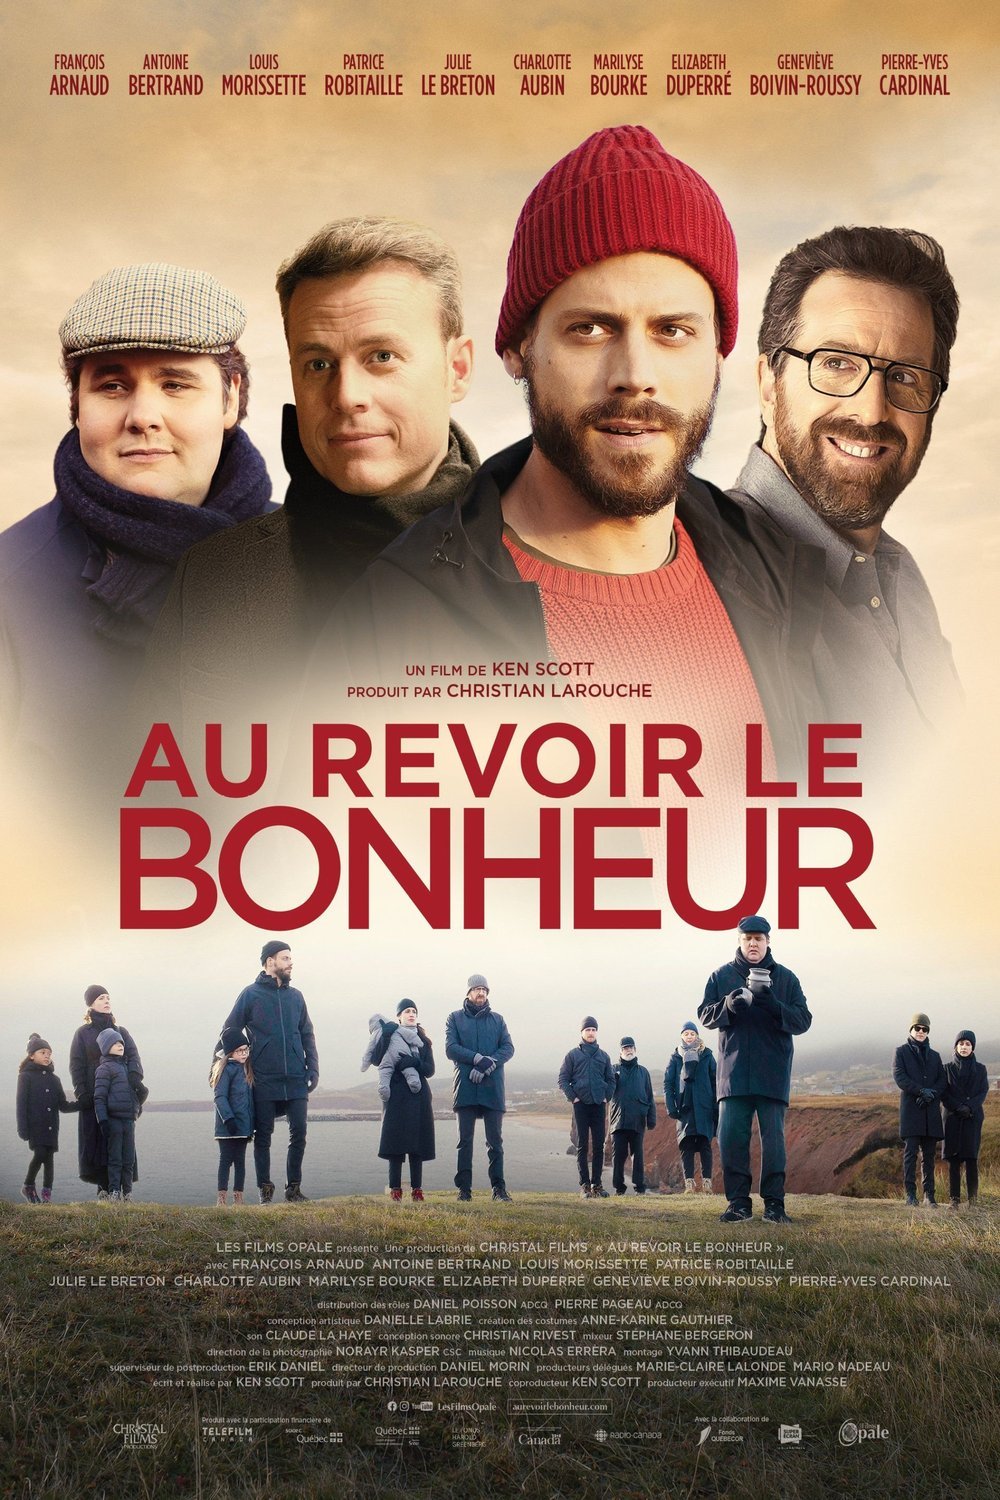 Poster of the movie Au revoir le bonheur